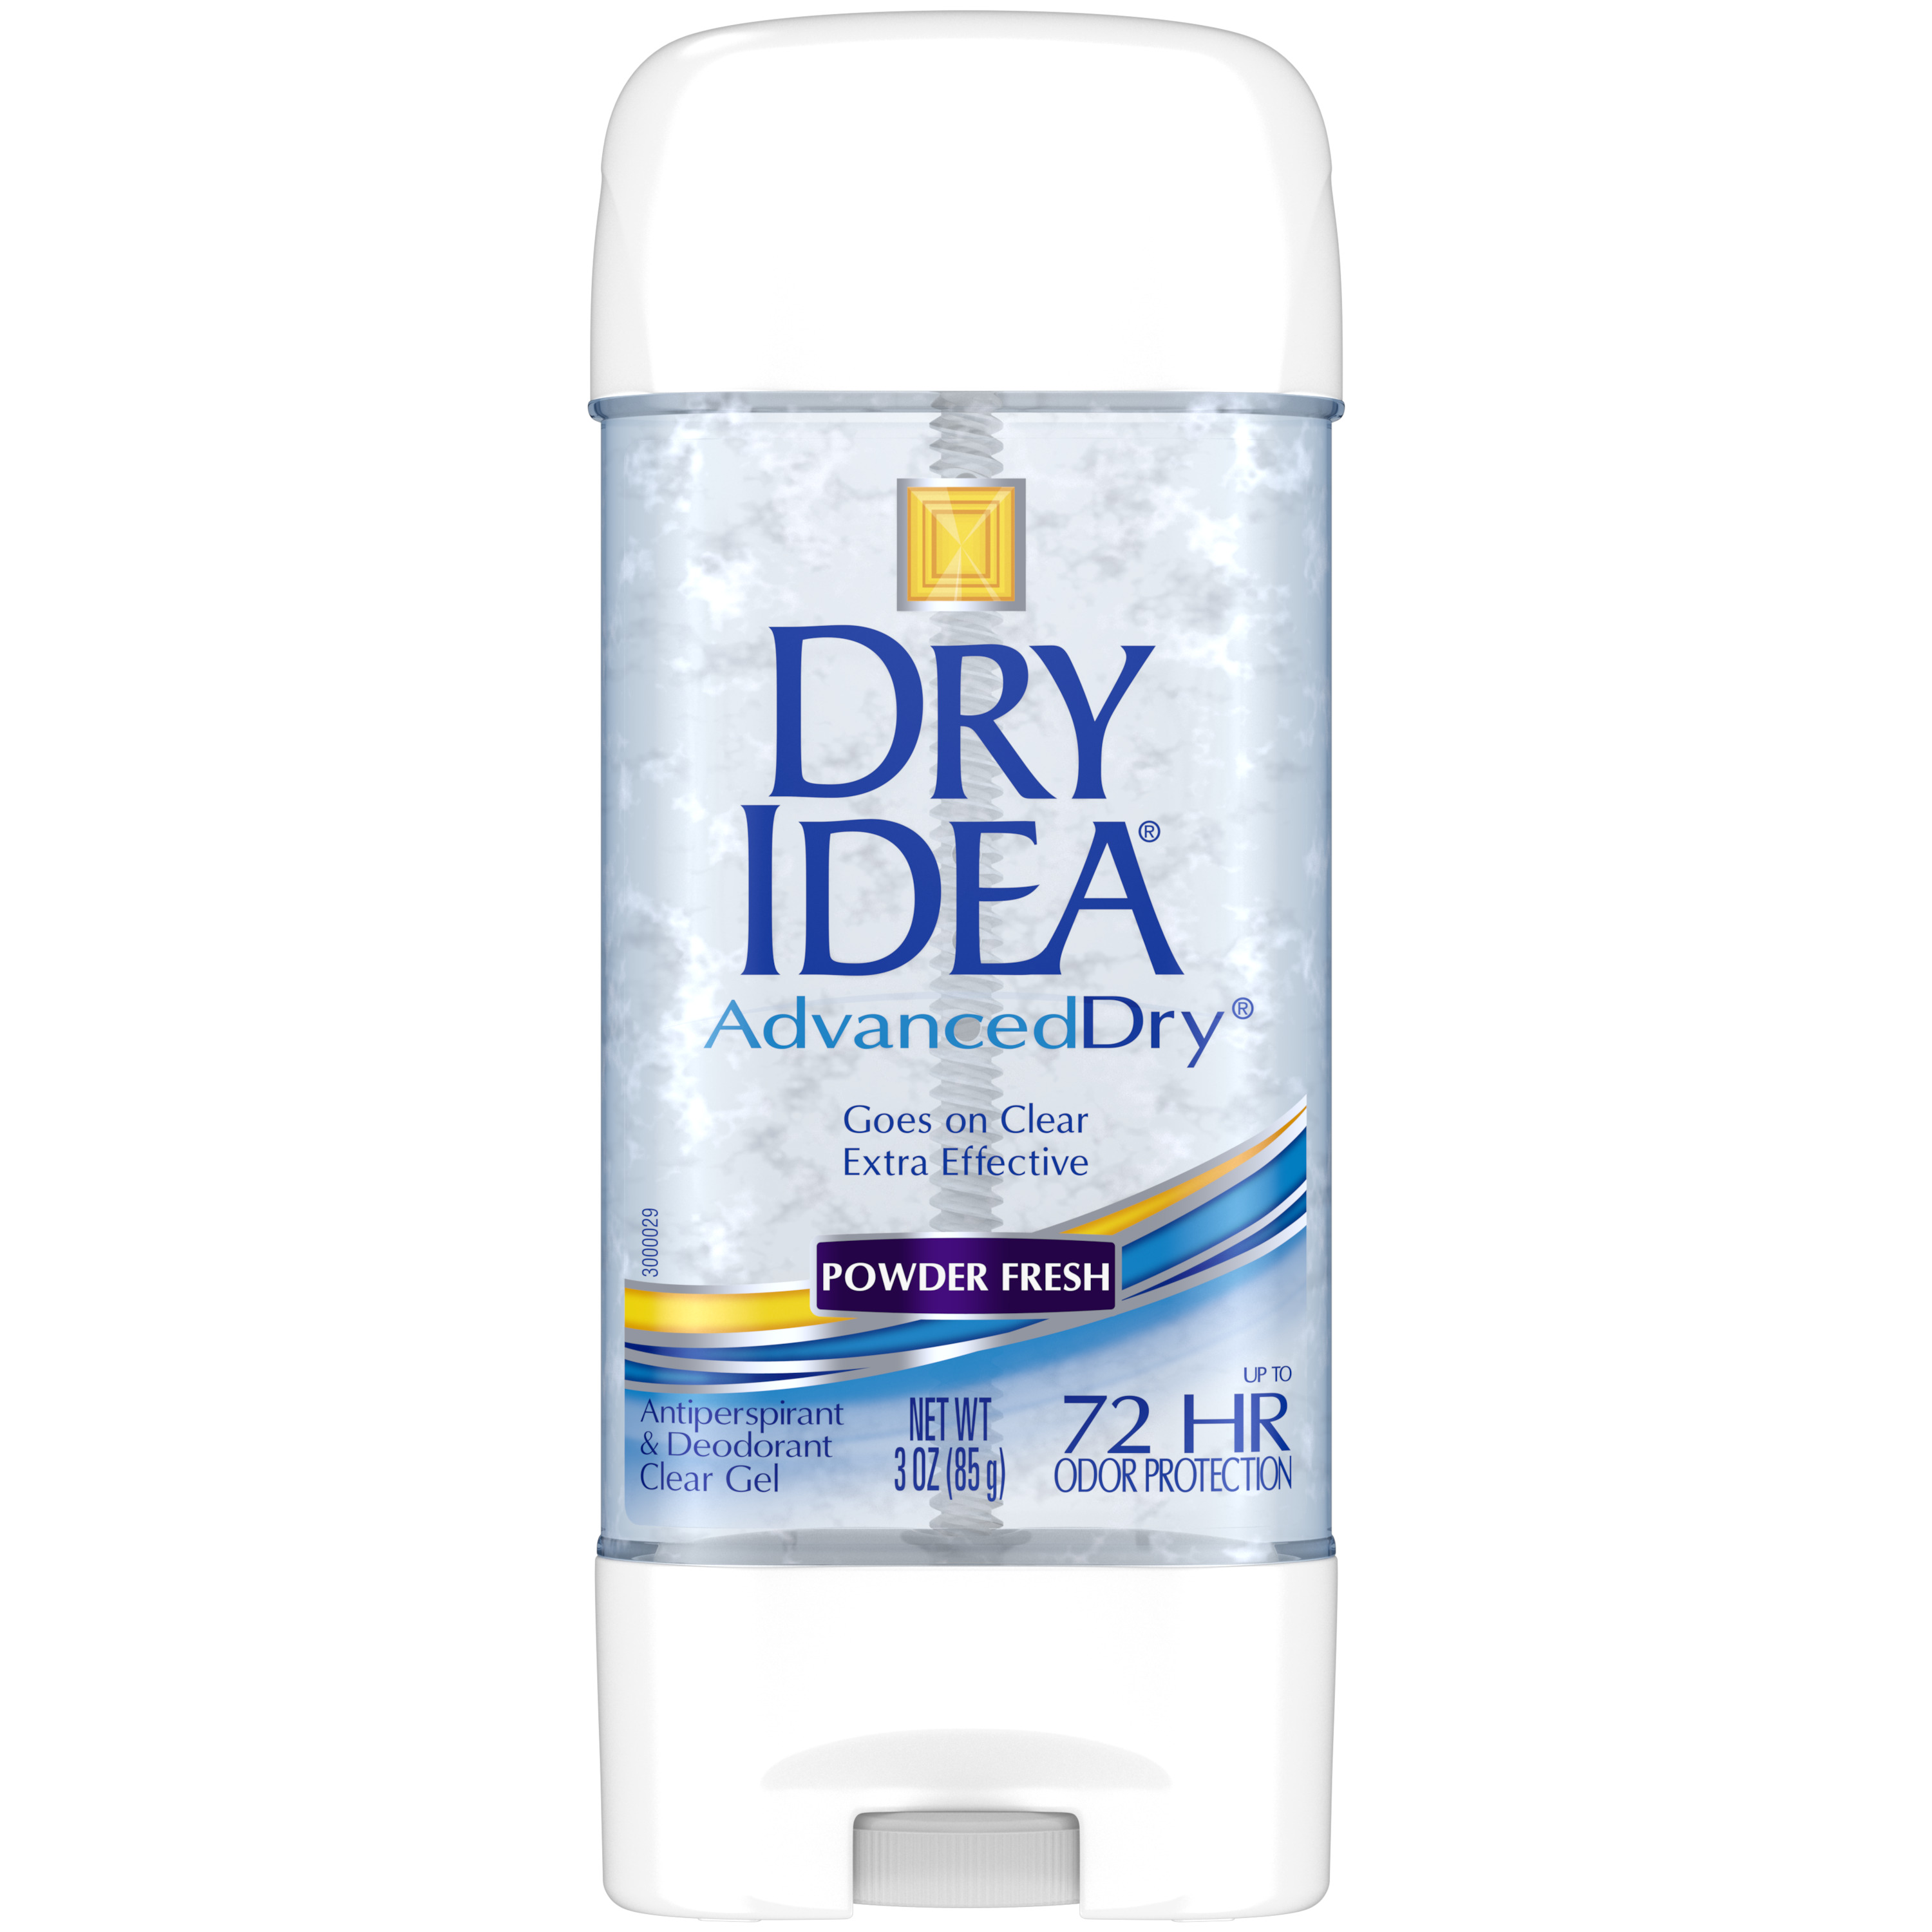 Dry Idea AdvancedDry Antiperspirant Deodorant Gel, Powder Fresh, 3 oz - image 1 of 5